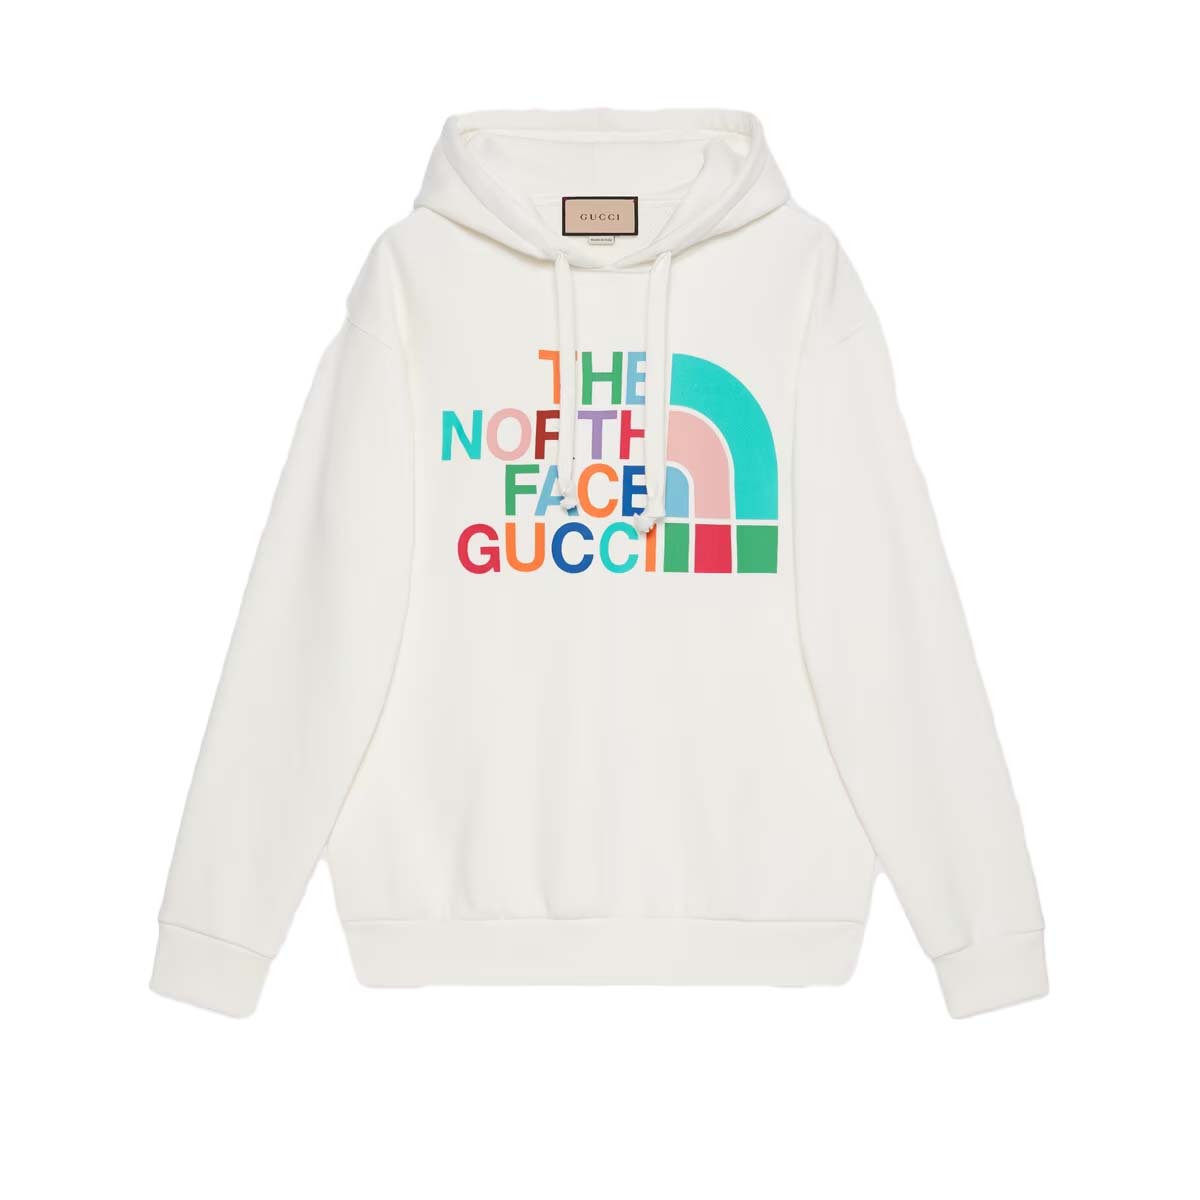 Gucci x The North Face Cotton Sweatshirt Off White/Multicolor